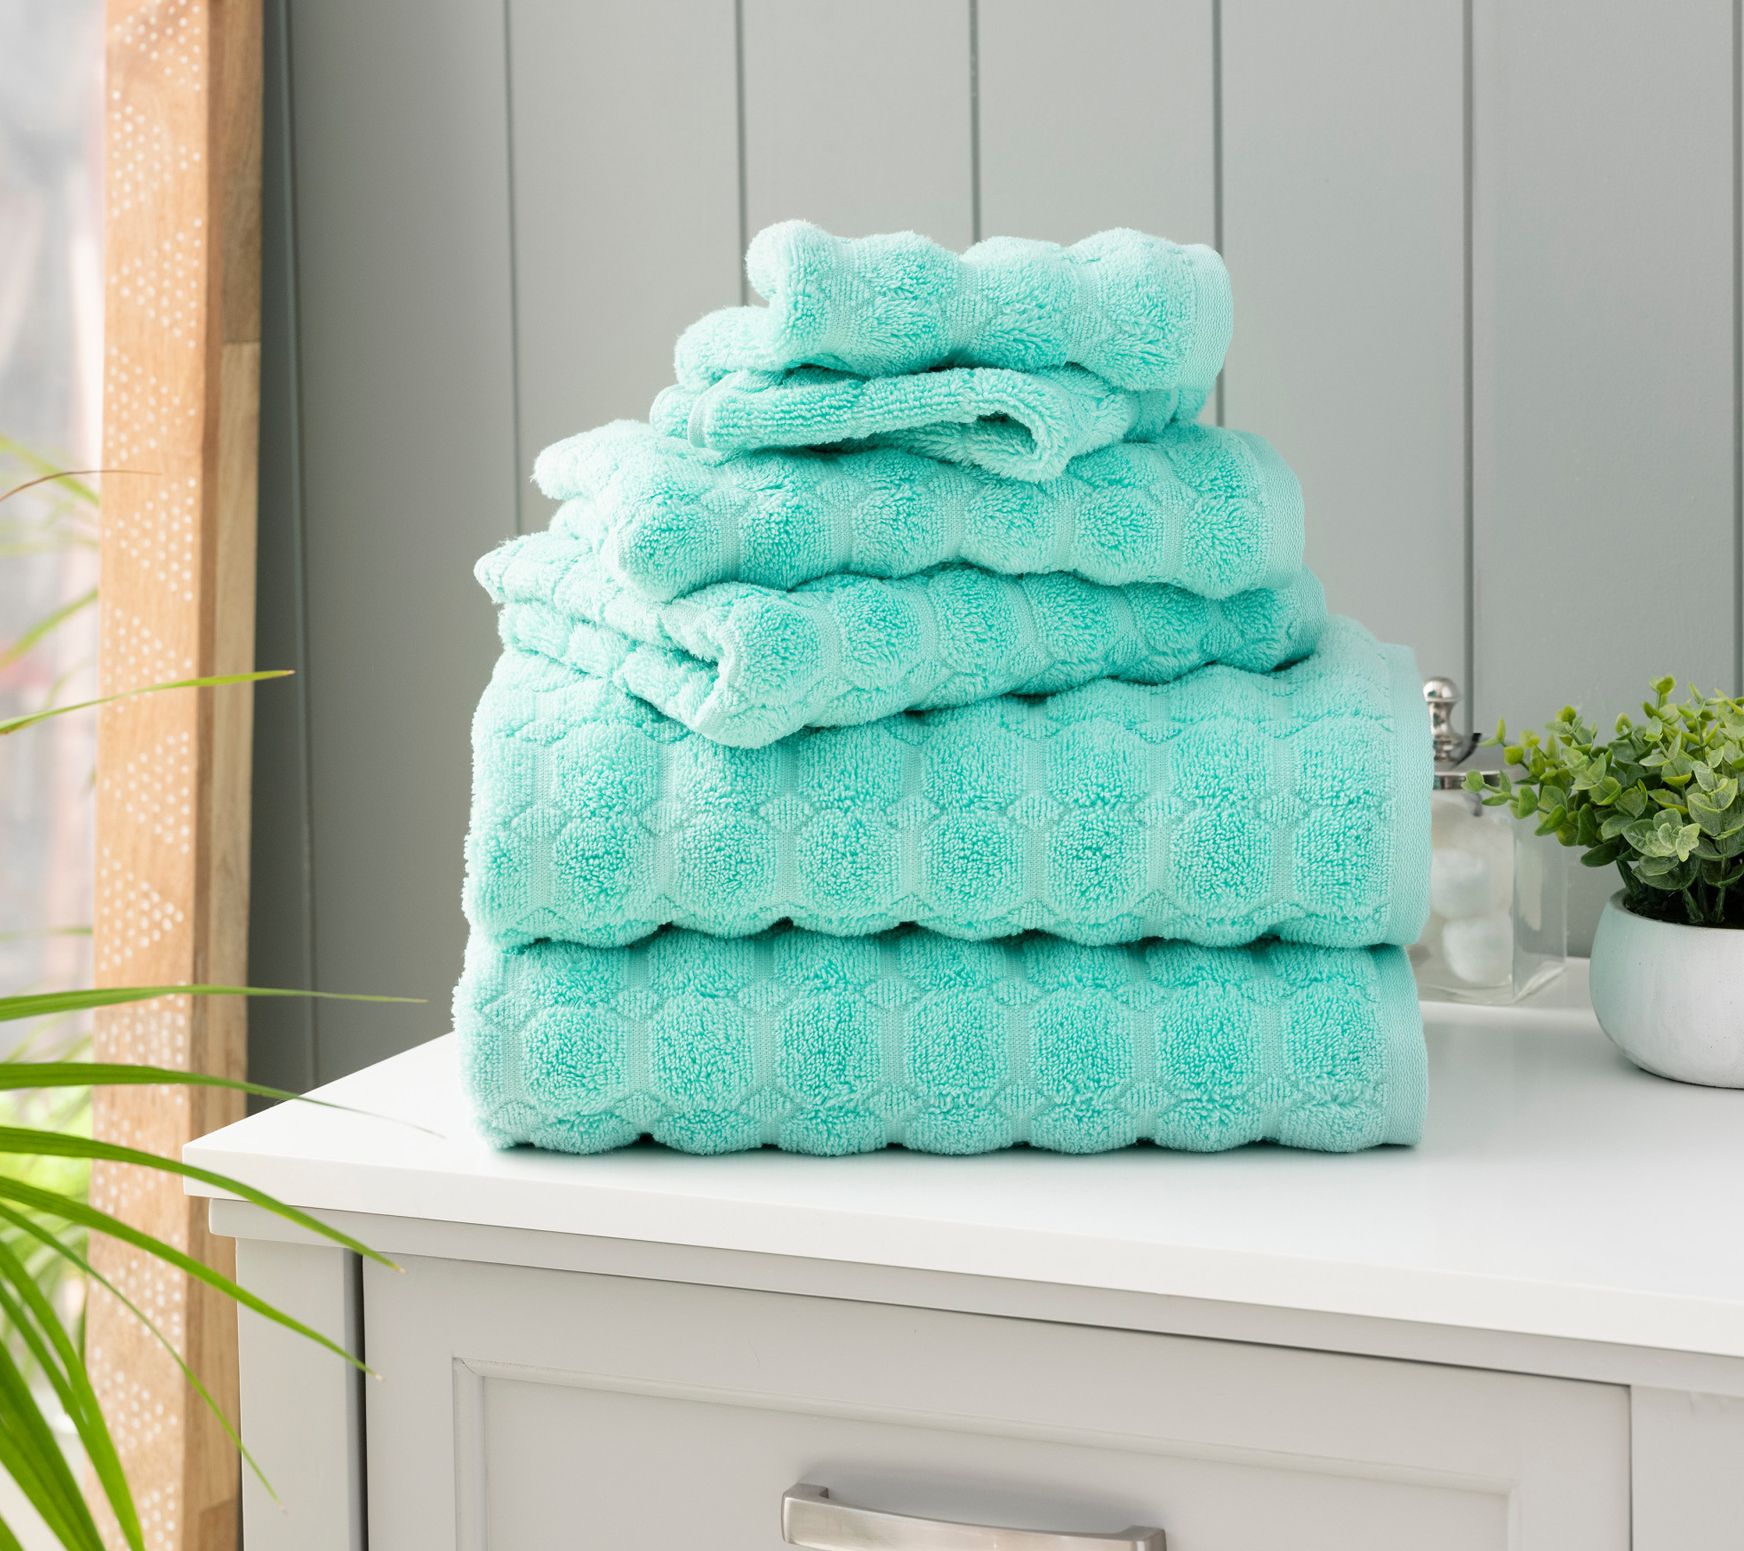  MARTHA STEWART 100% Cotton Bath Towels Set Of 6 Piece